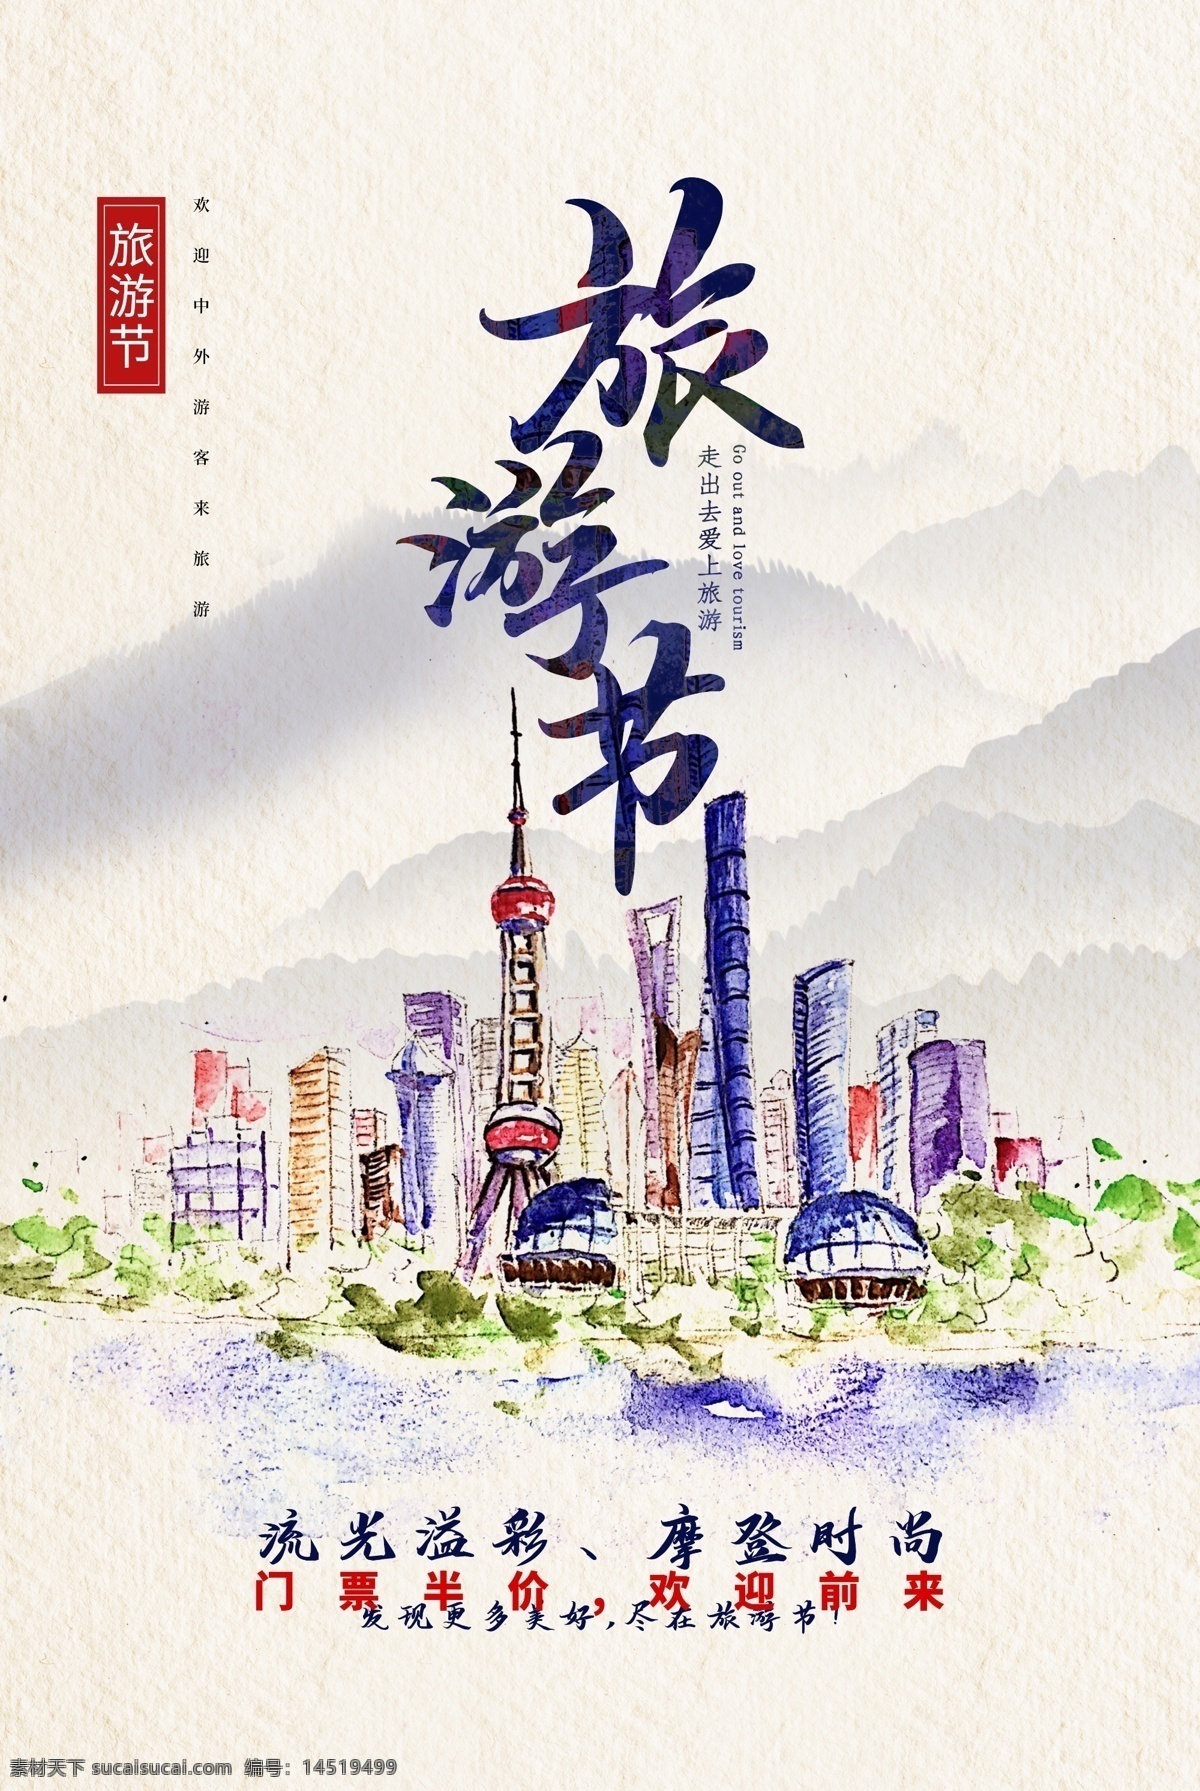 上海旅游 旅行 活动 海报 上海 旅游